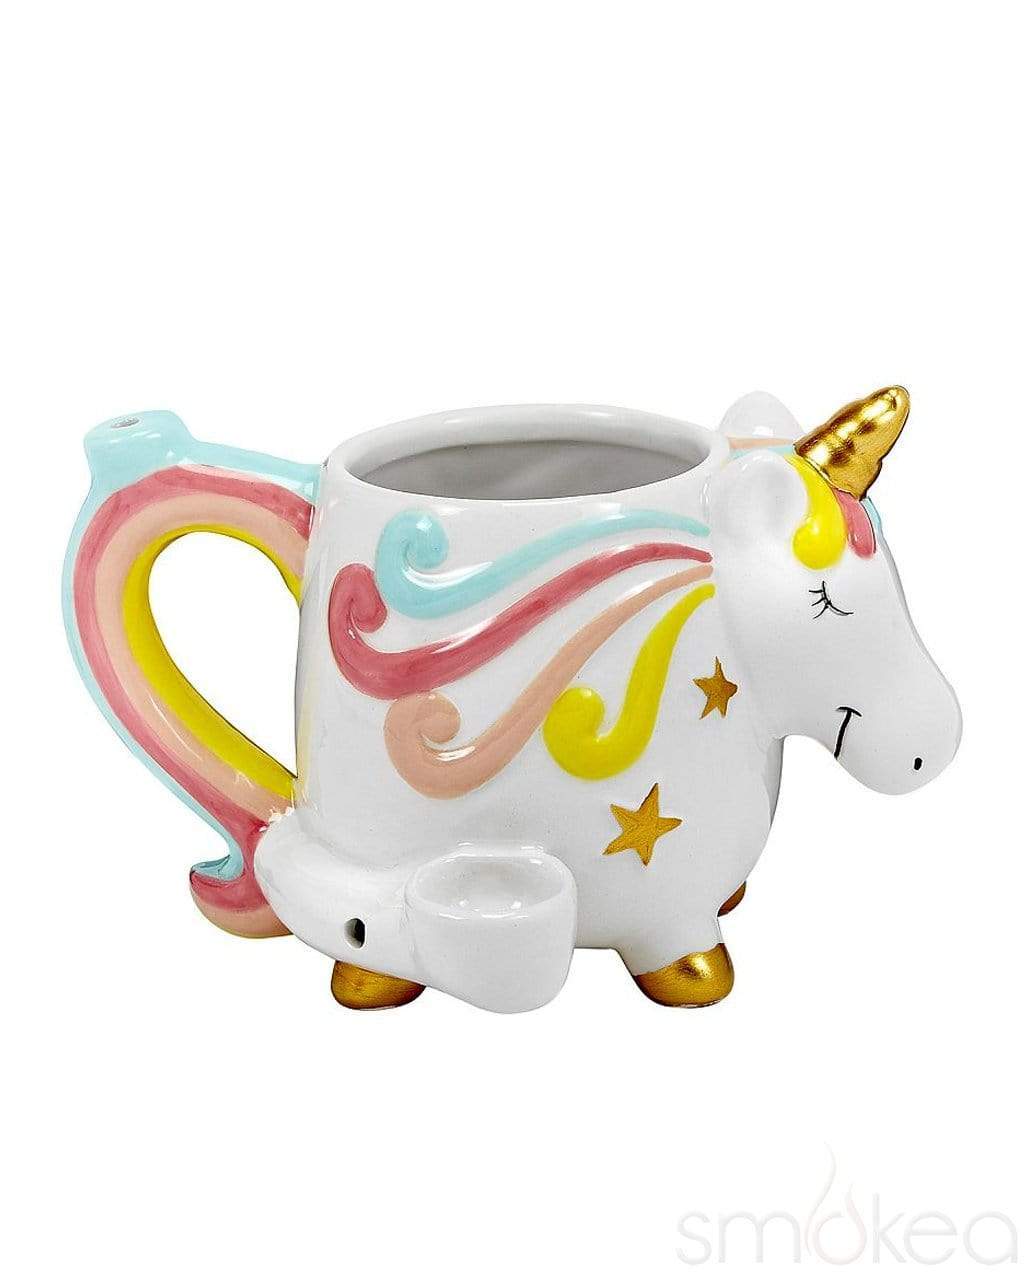 smokea-ceramic-unicorn-coffee-mug-pipe-1